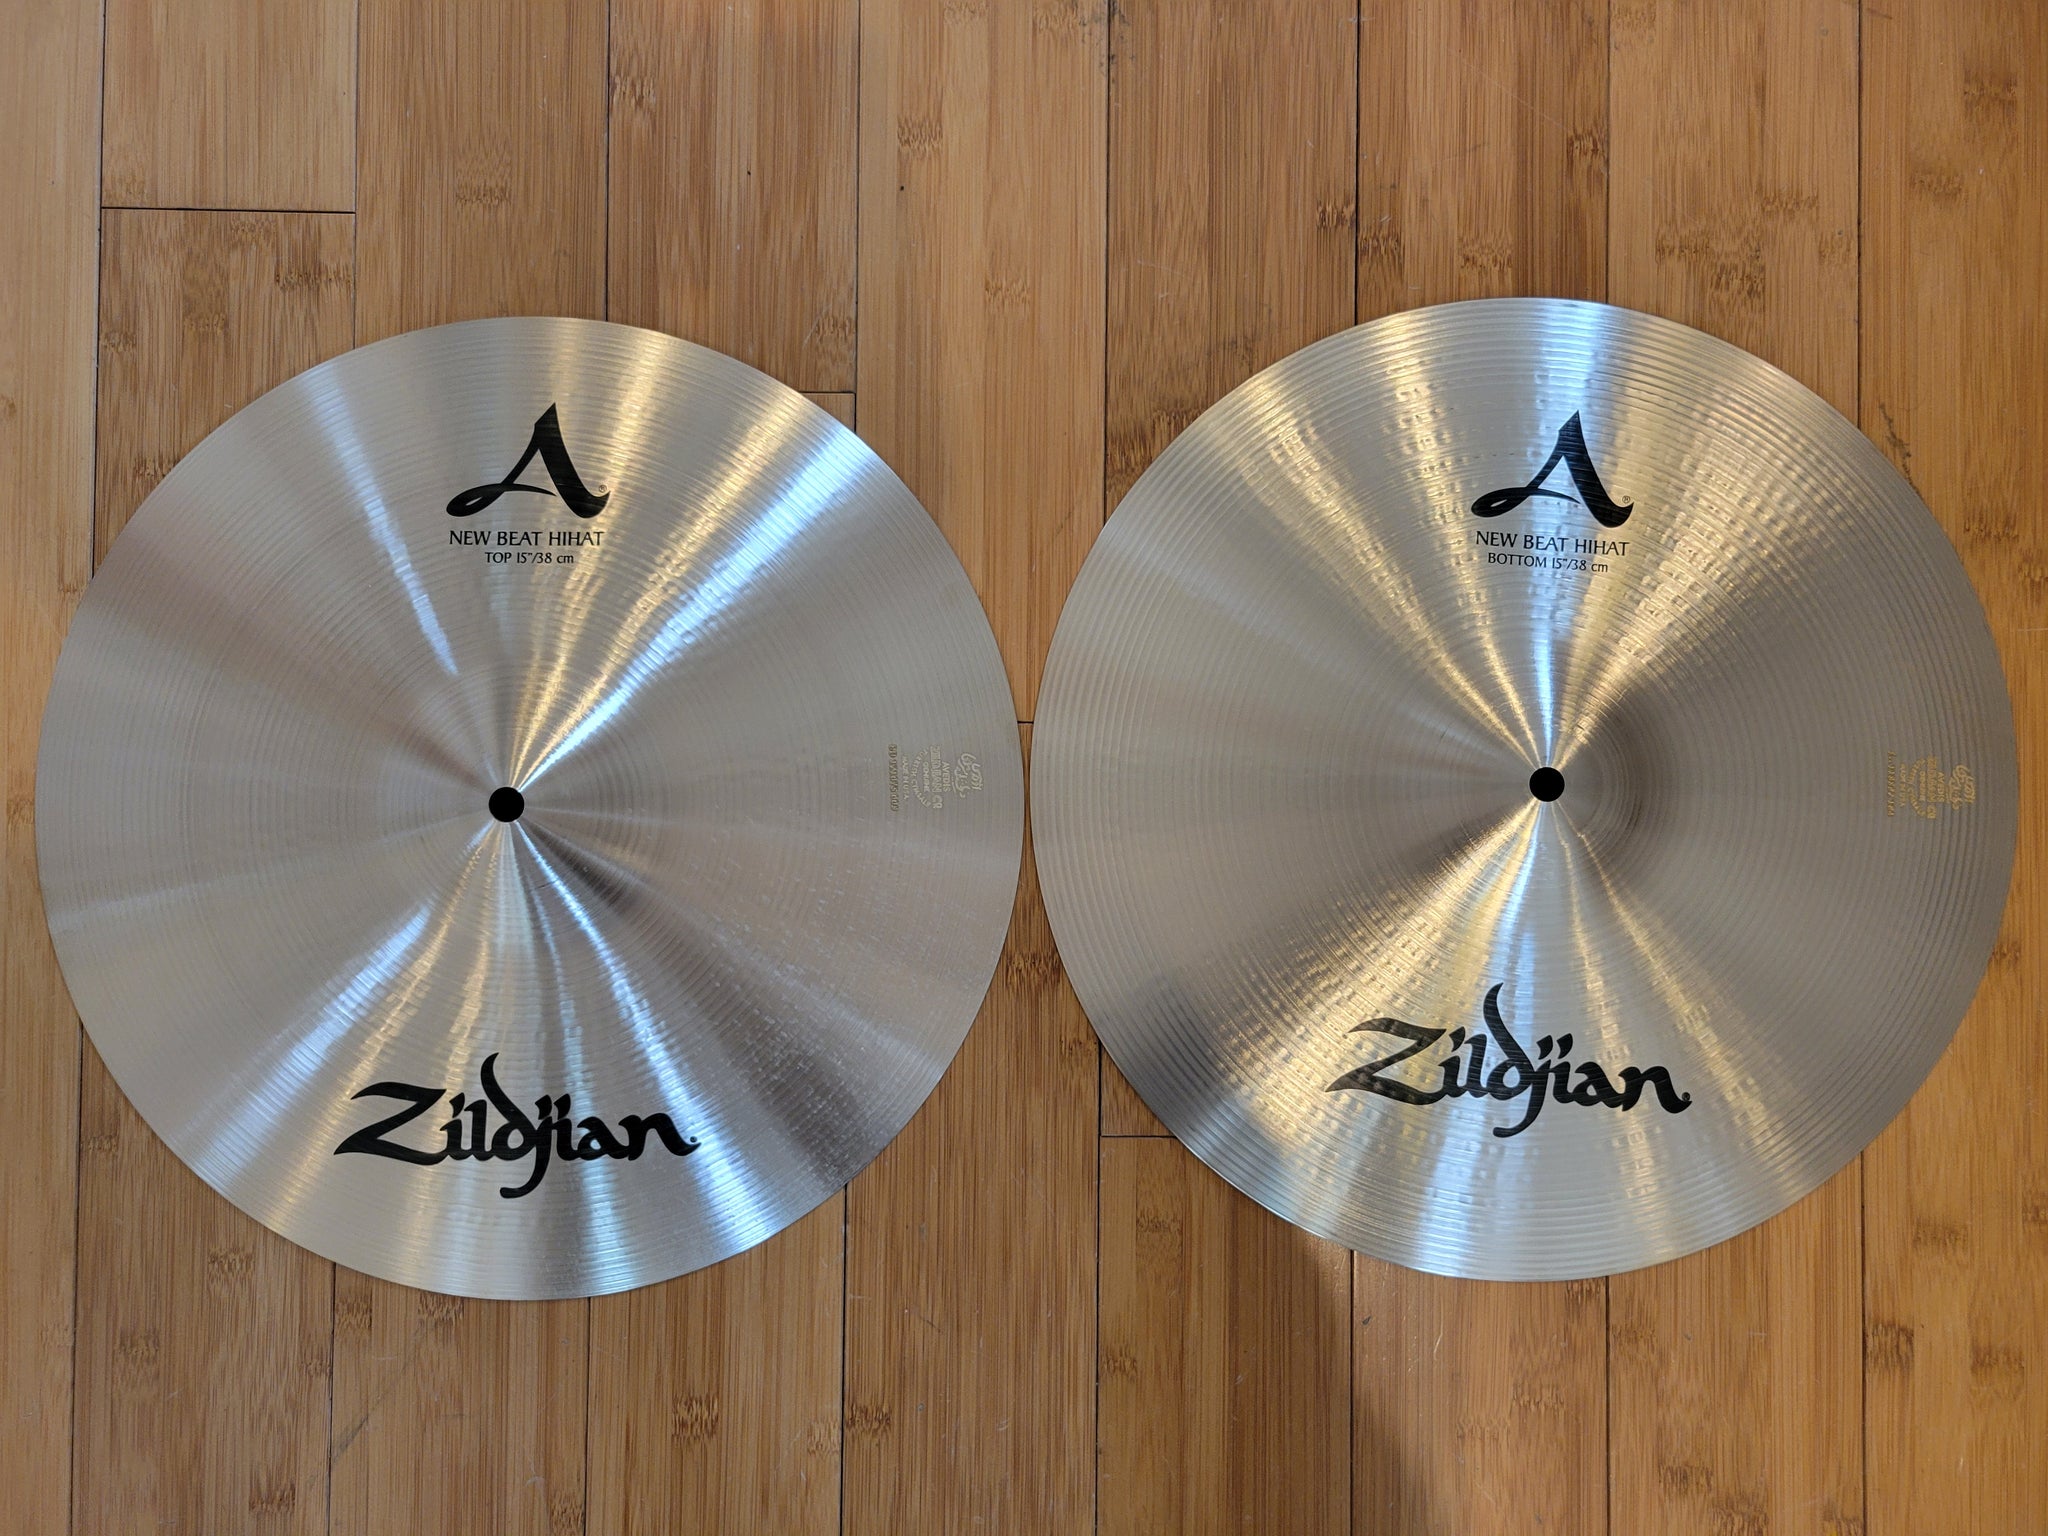 Cymbals - Zildjian 15" A Zildjian New Beat Hi Hats